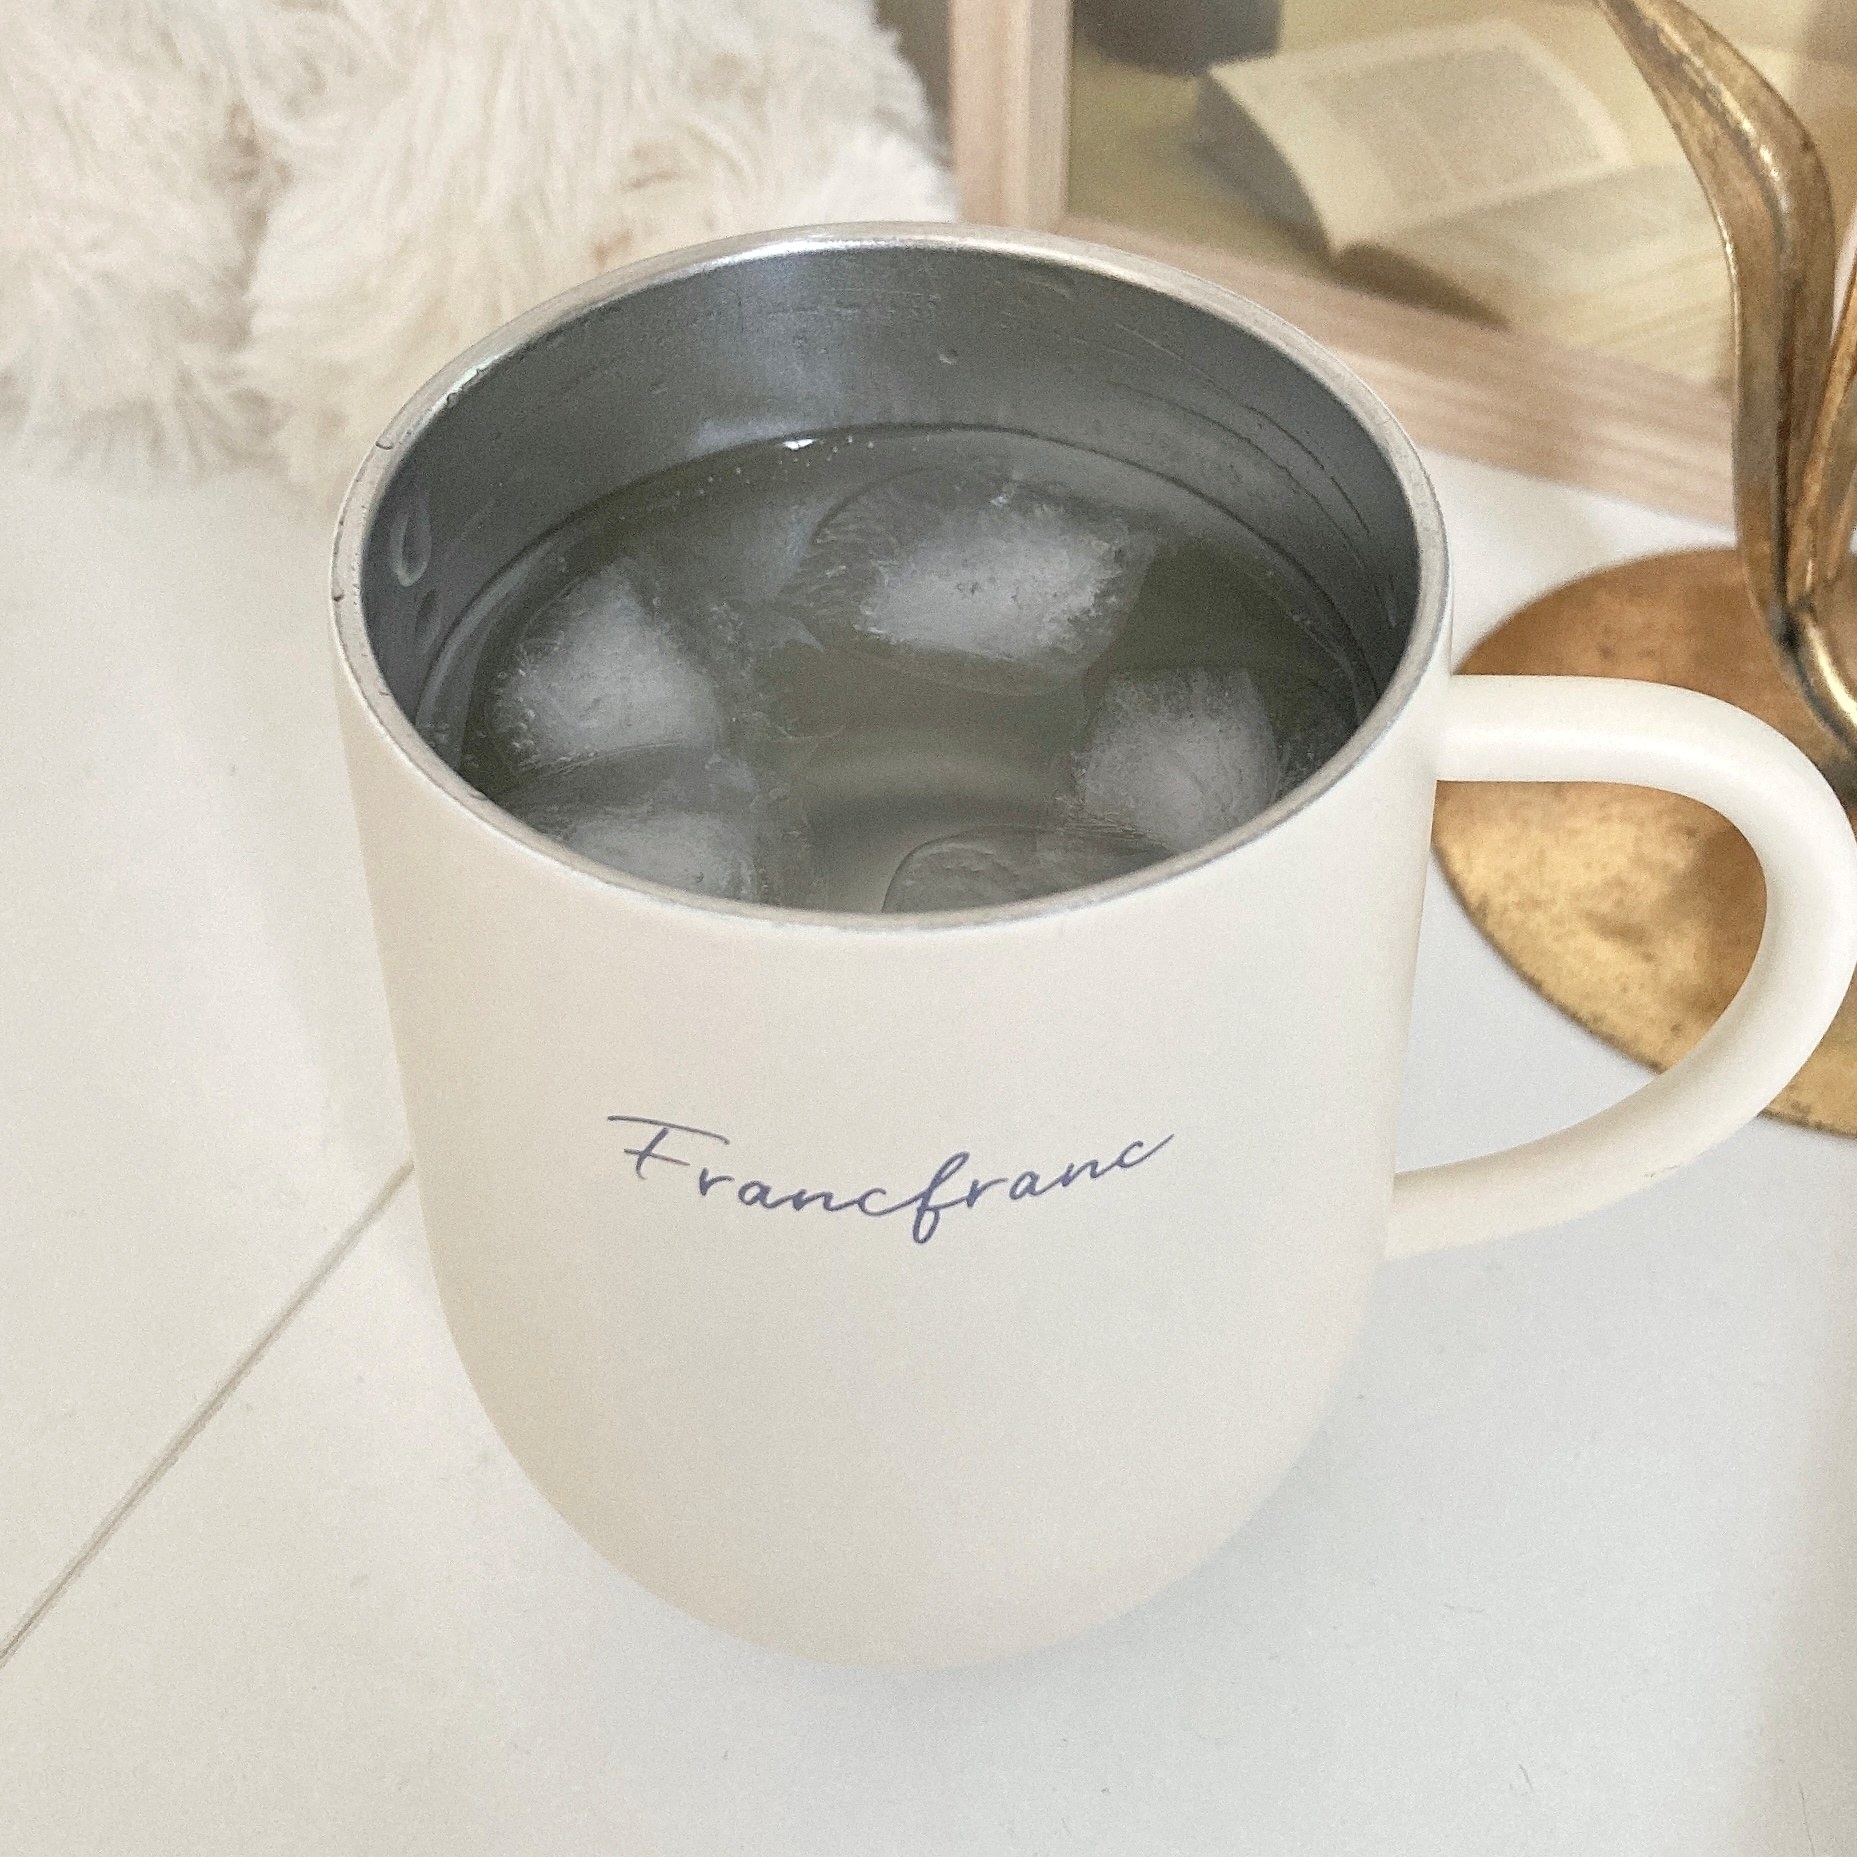 Francfranc（フランフラン）のオススメのマグカップ「フタ付き ステンレスサーモマグ ホワイト」